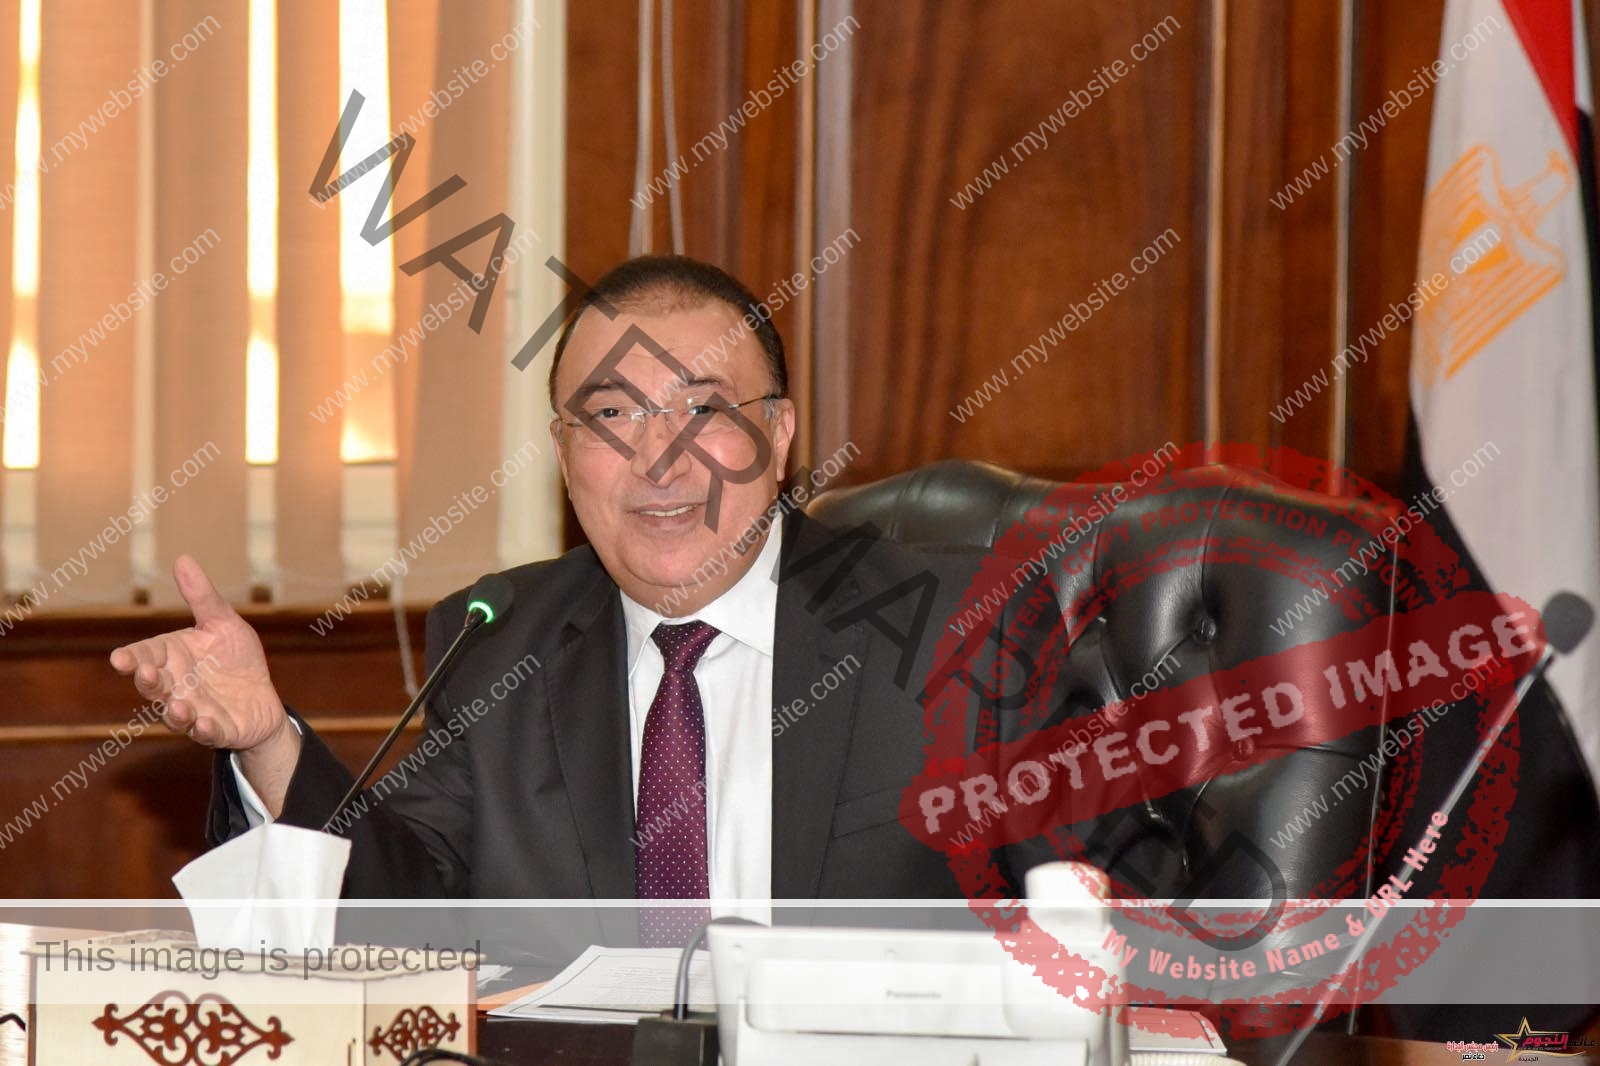 محافظ الإسكندرية يستعرض استعدادات جميع الأجهزة المعنية لاستقبال الانتخابات الرئاسية 2024